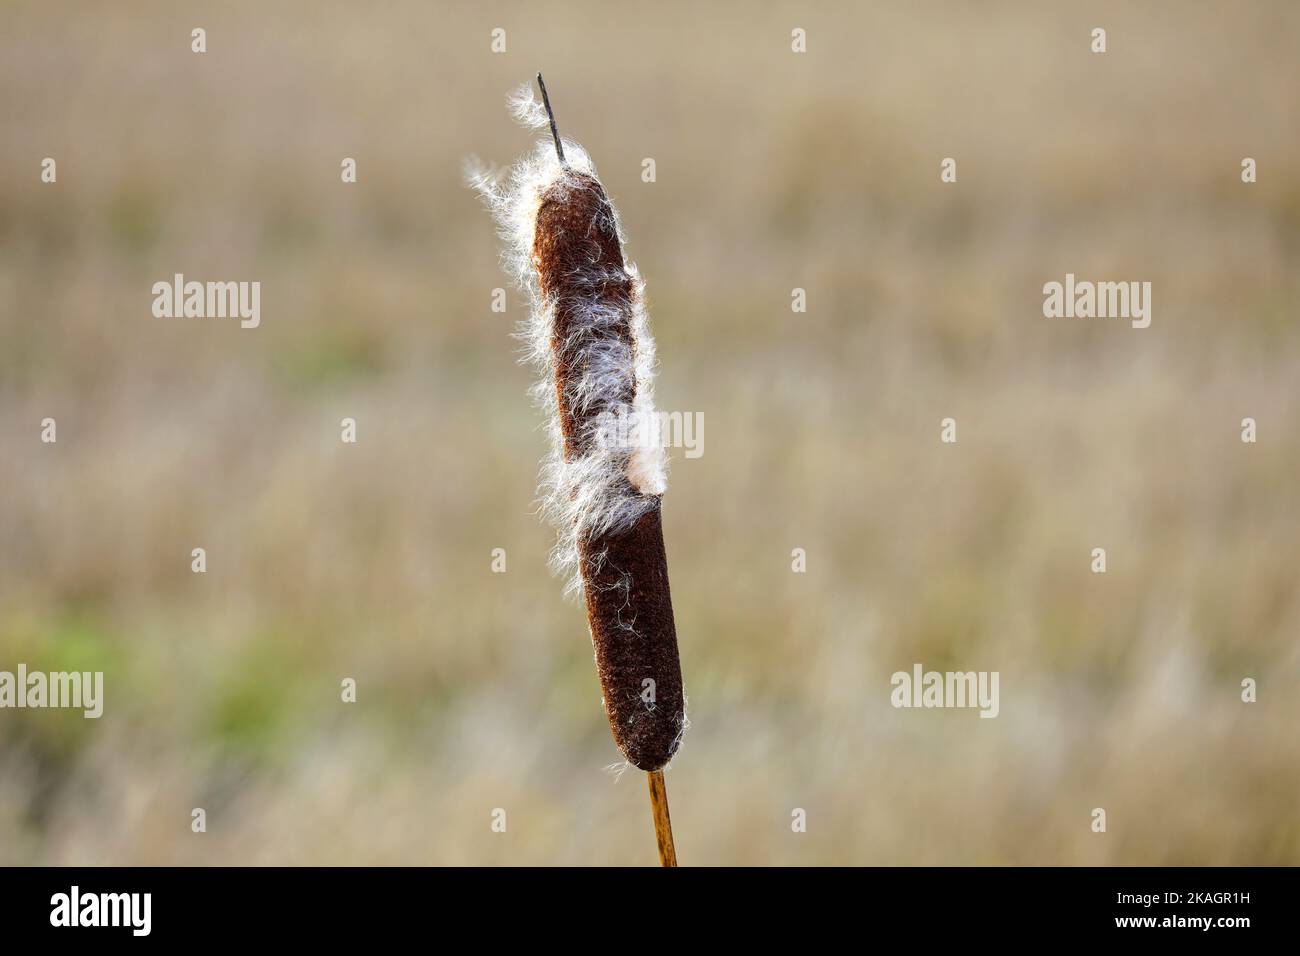 Testa di semi matura di Typha latifolia, chiamata anche rush o Cattail comune, in inverno. La lanugine cottonosa si disperderà dal vento. Foto Stock